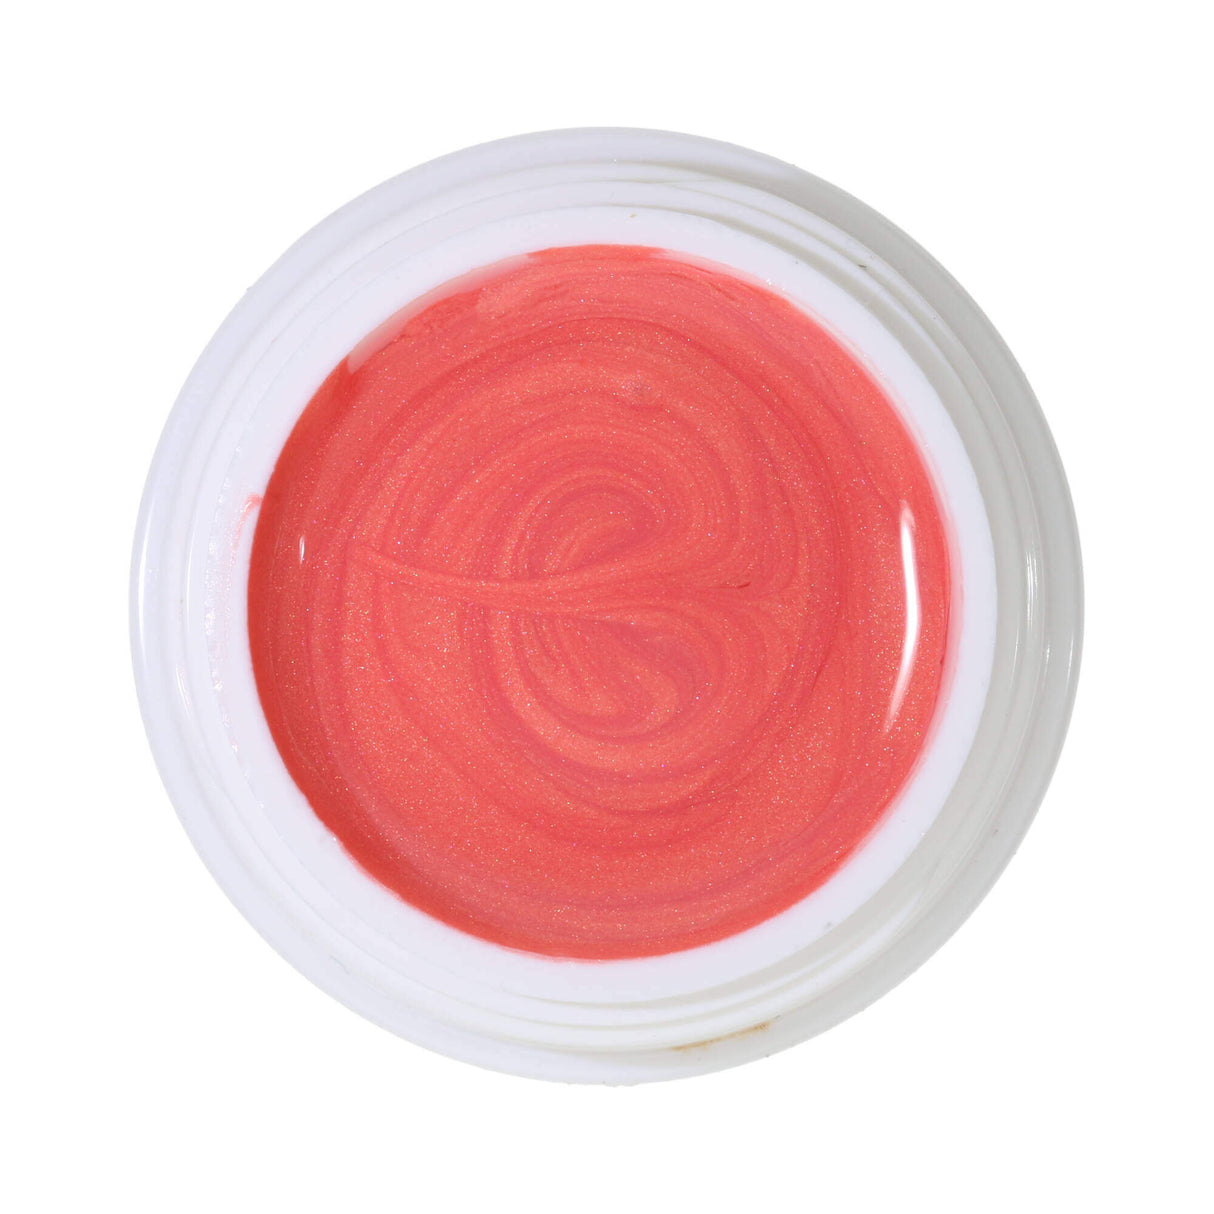 #313 Premium EFFECT Color Gel 5ml Ton saumon clair avec un effet chatoyant subtil